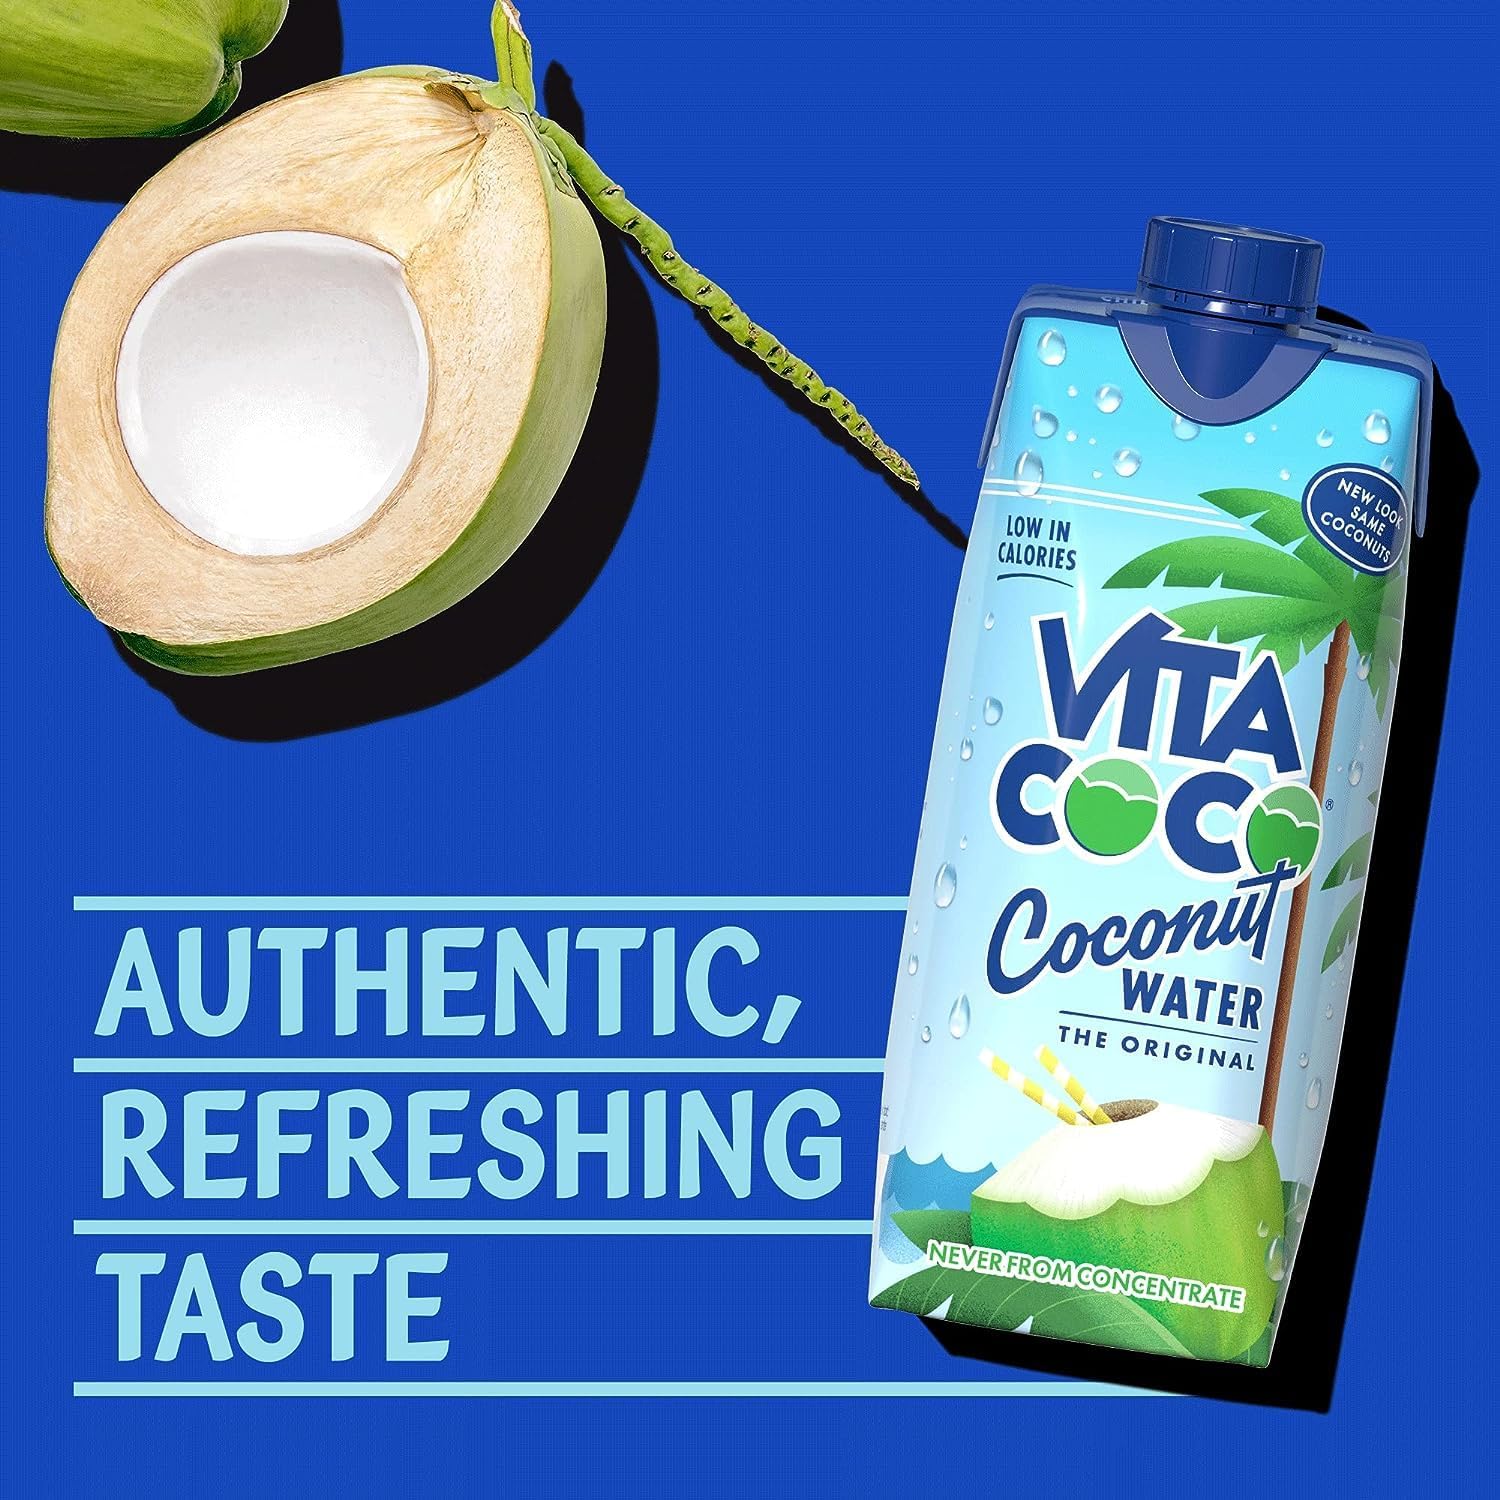 Vita Coco Coconut Water 330ml